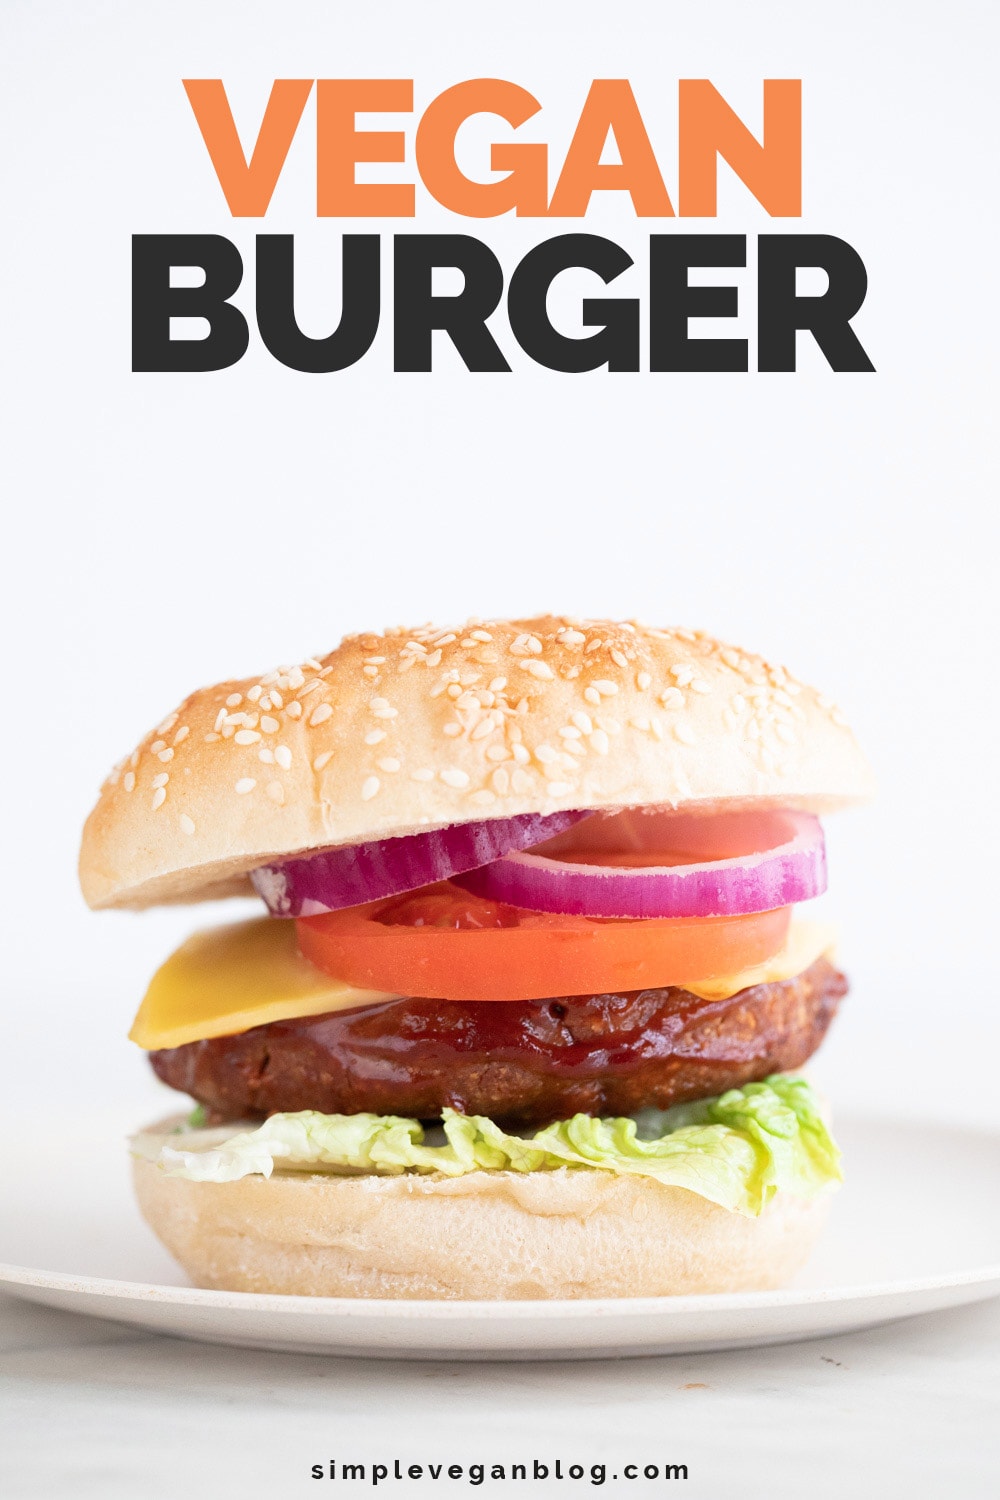 Vegan Burger - Simple Vegan Blog